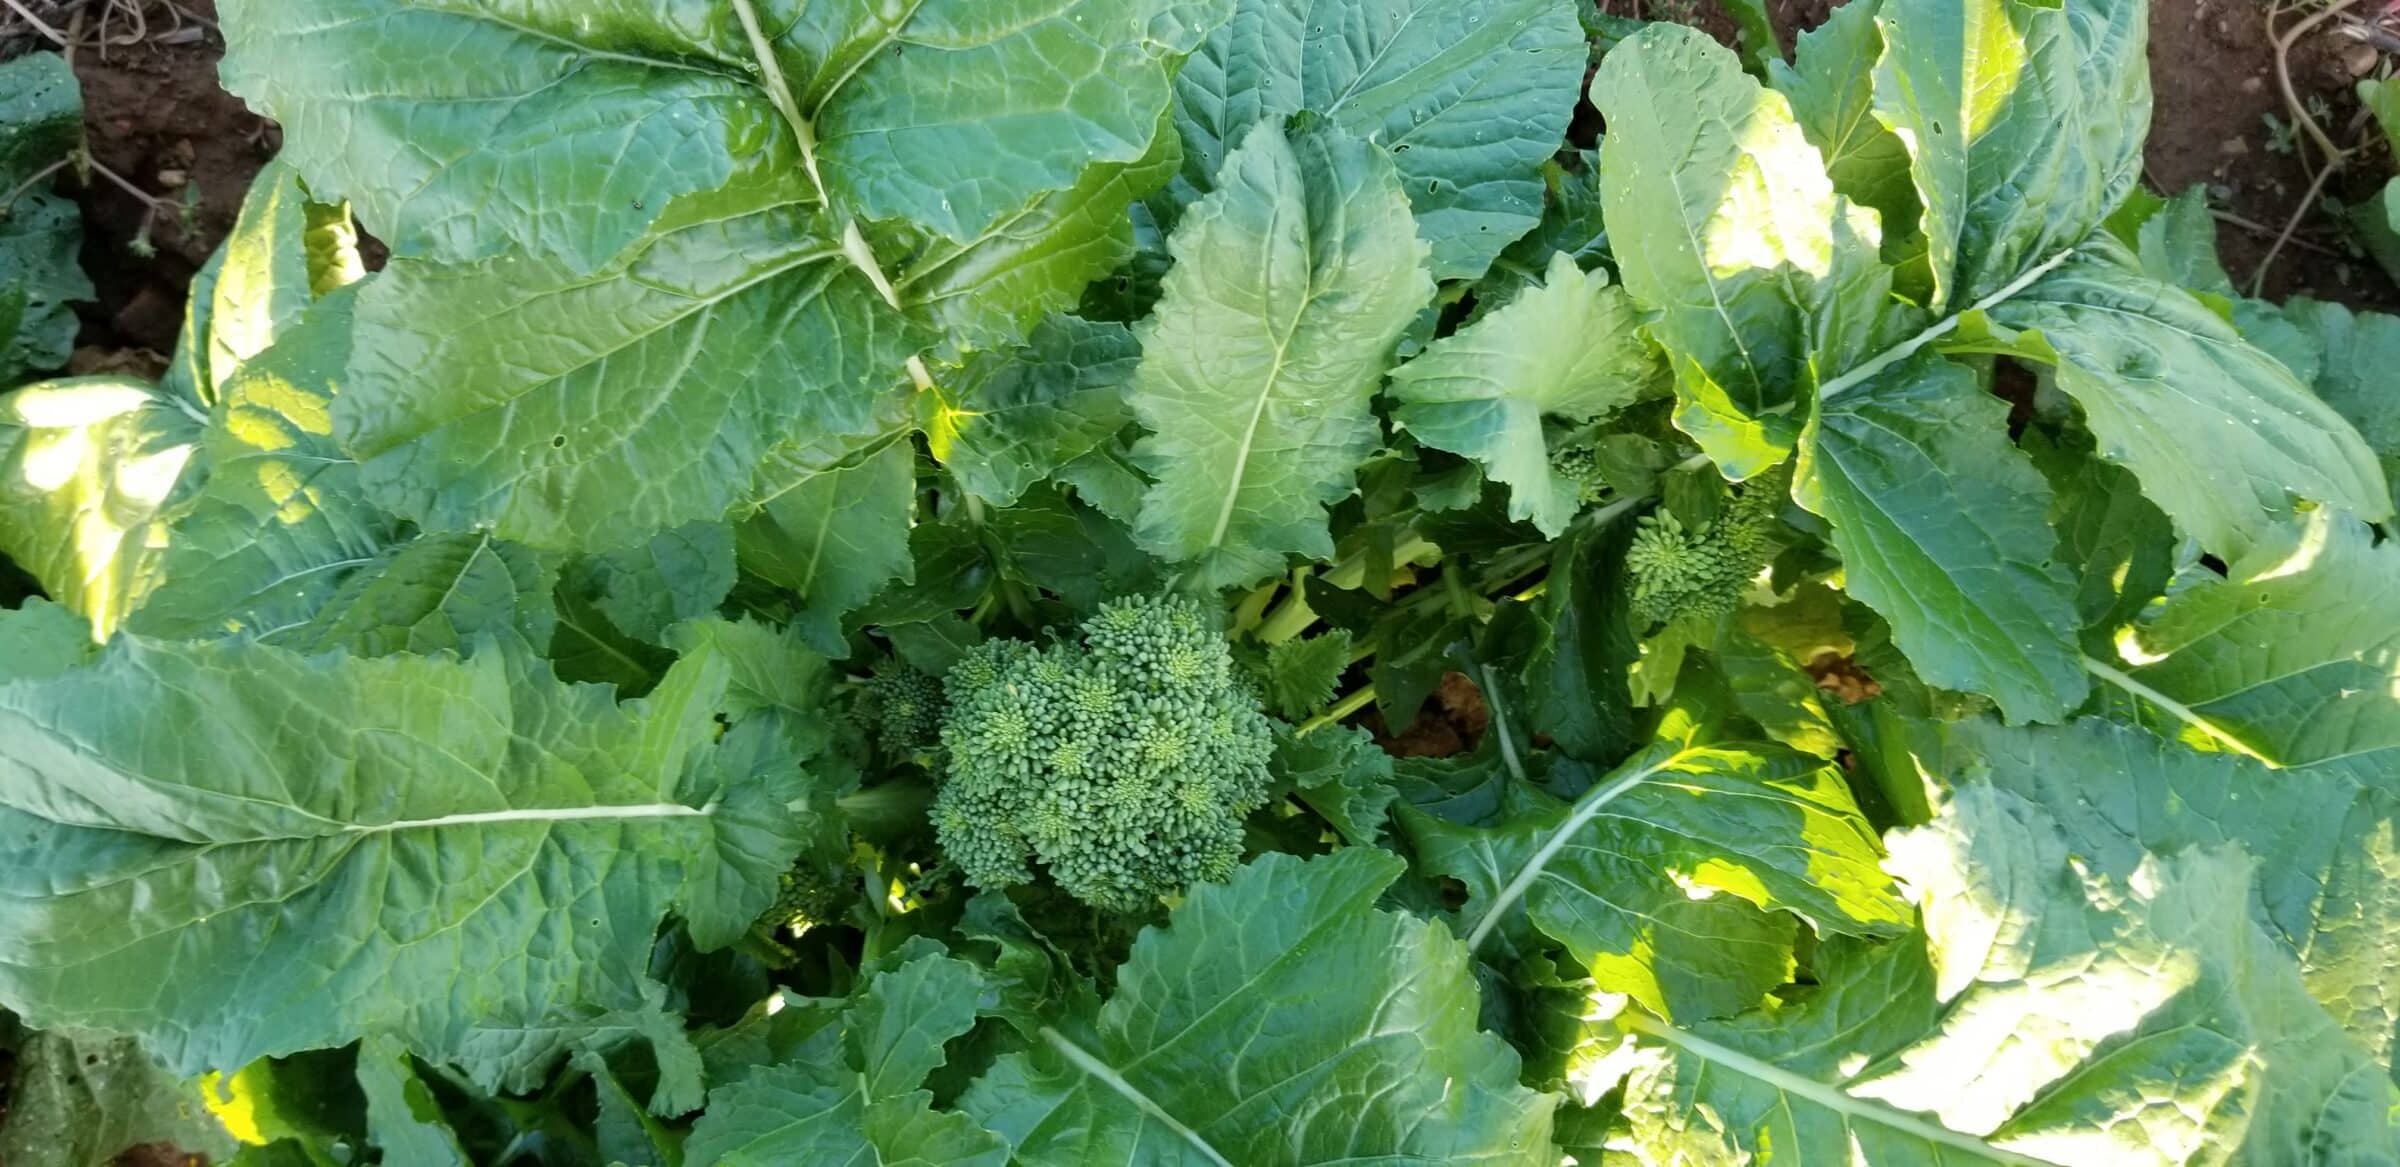 Grande Broccoli Raab (Not |